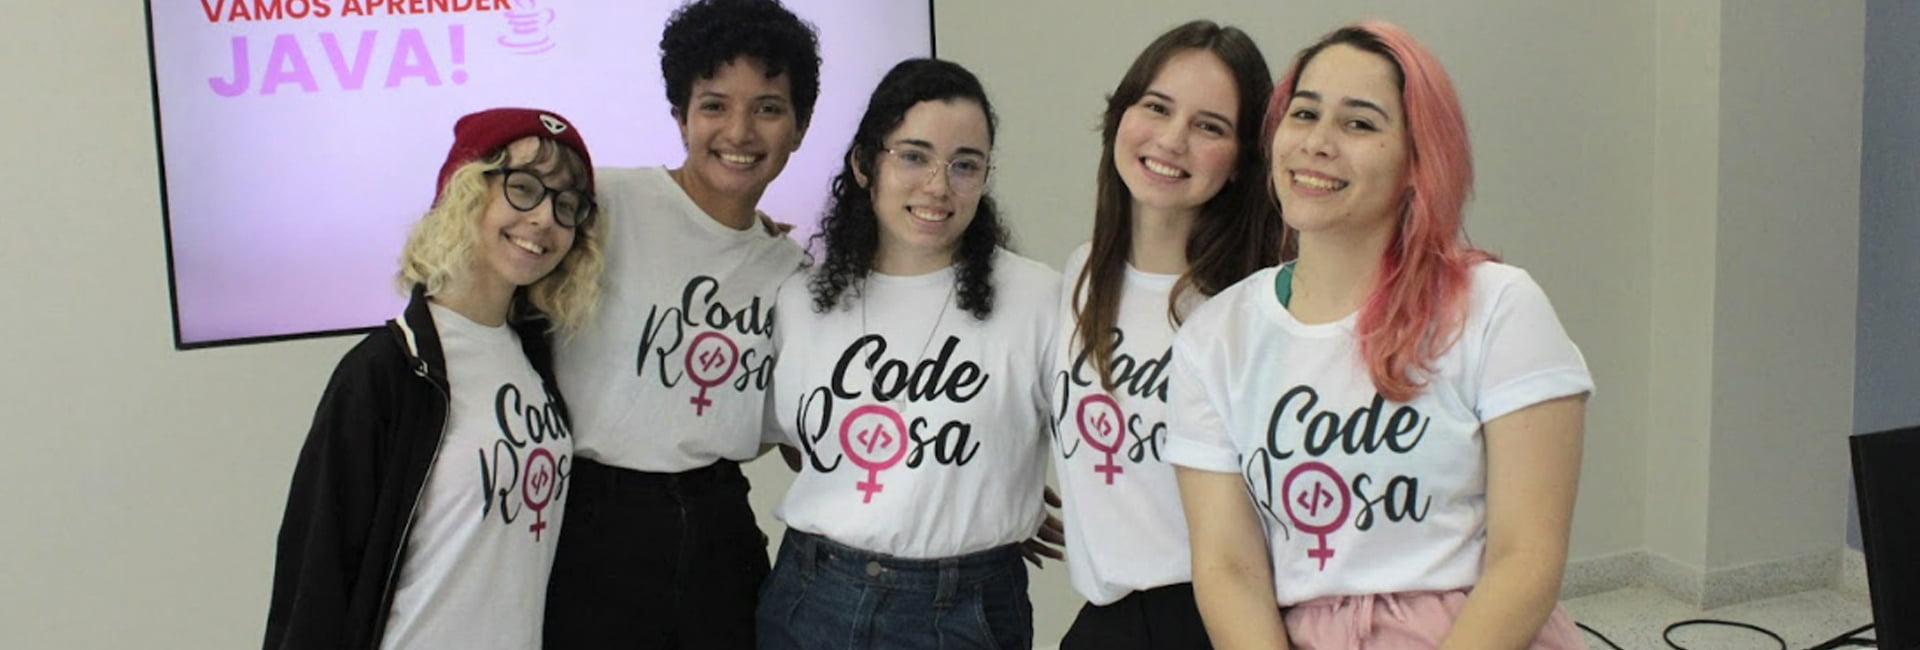 CodeRosa; Projeto de extenção da Unifacisa destaca avanços, desafios e empoderamento feminino na tecnologia